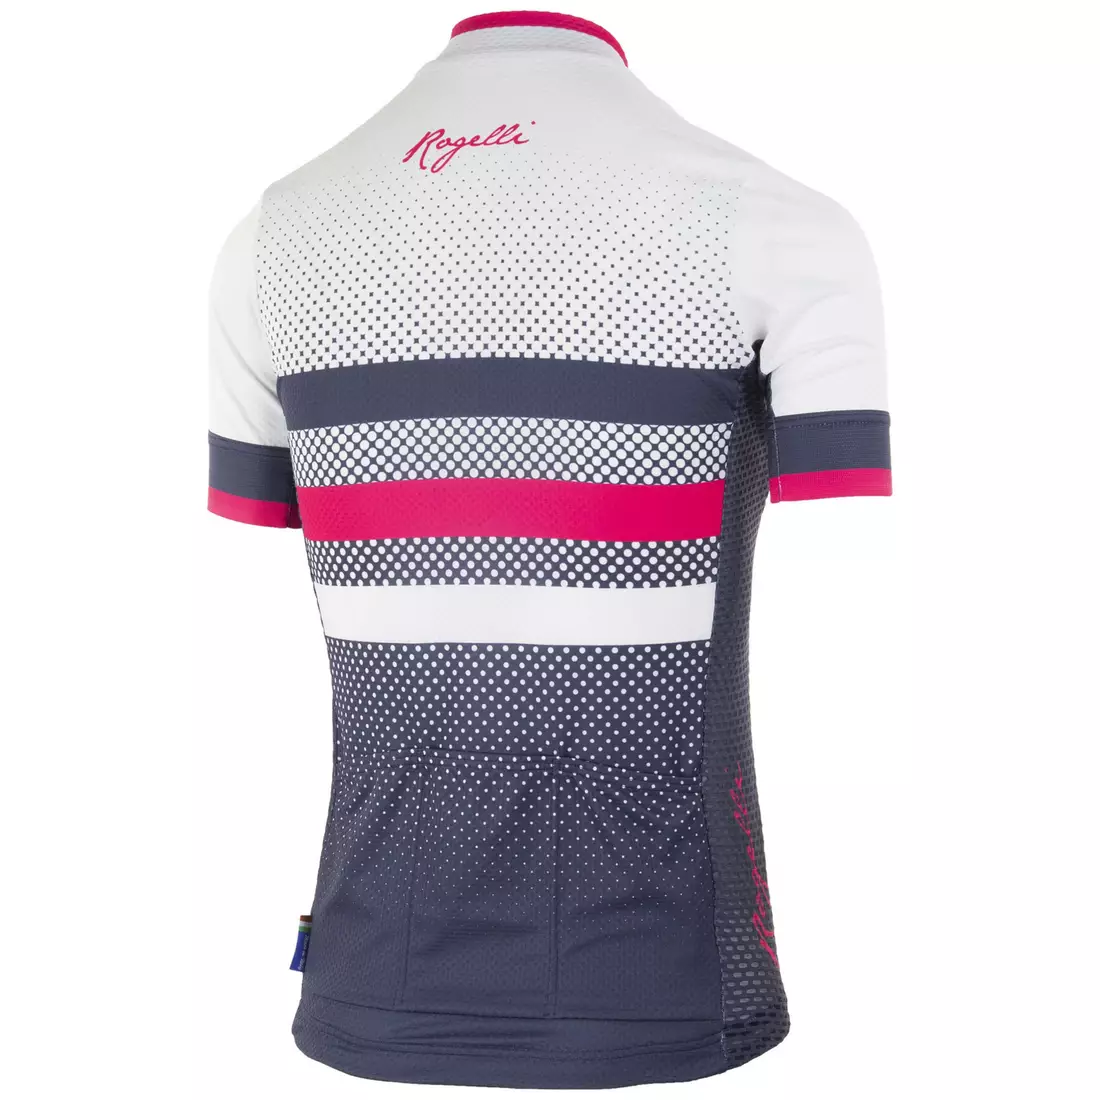 ROGELLI dámský cyklistický dres DOT blue/pink 010.177